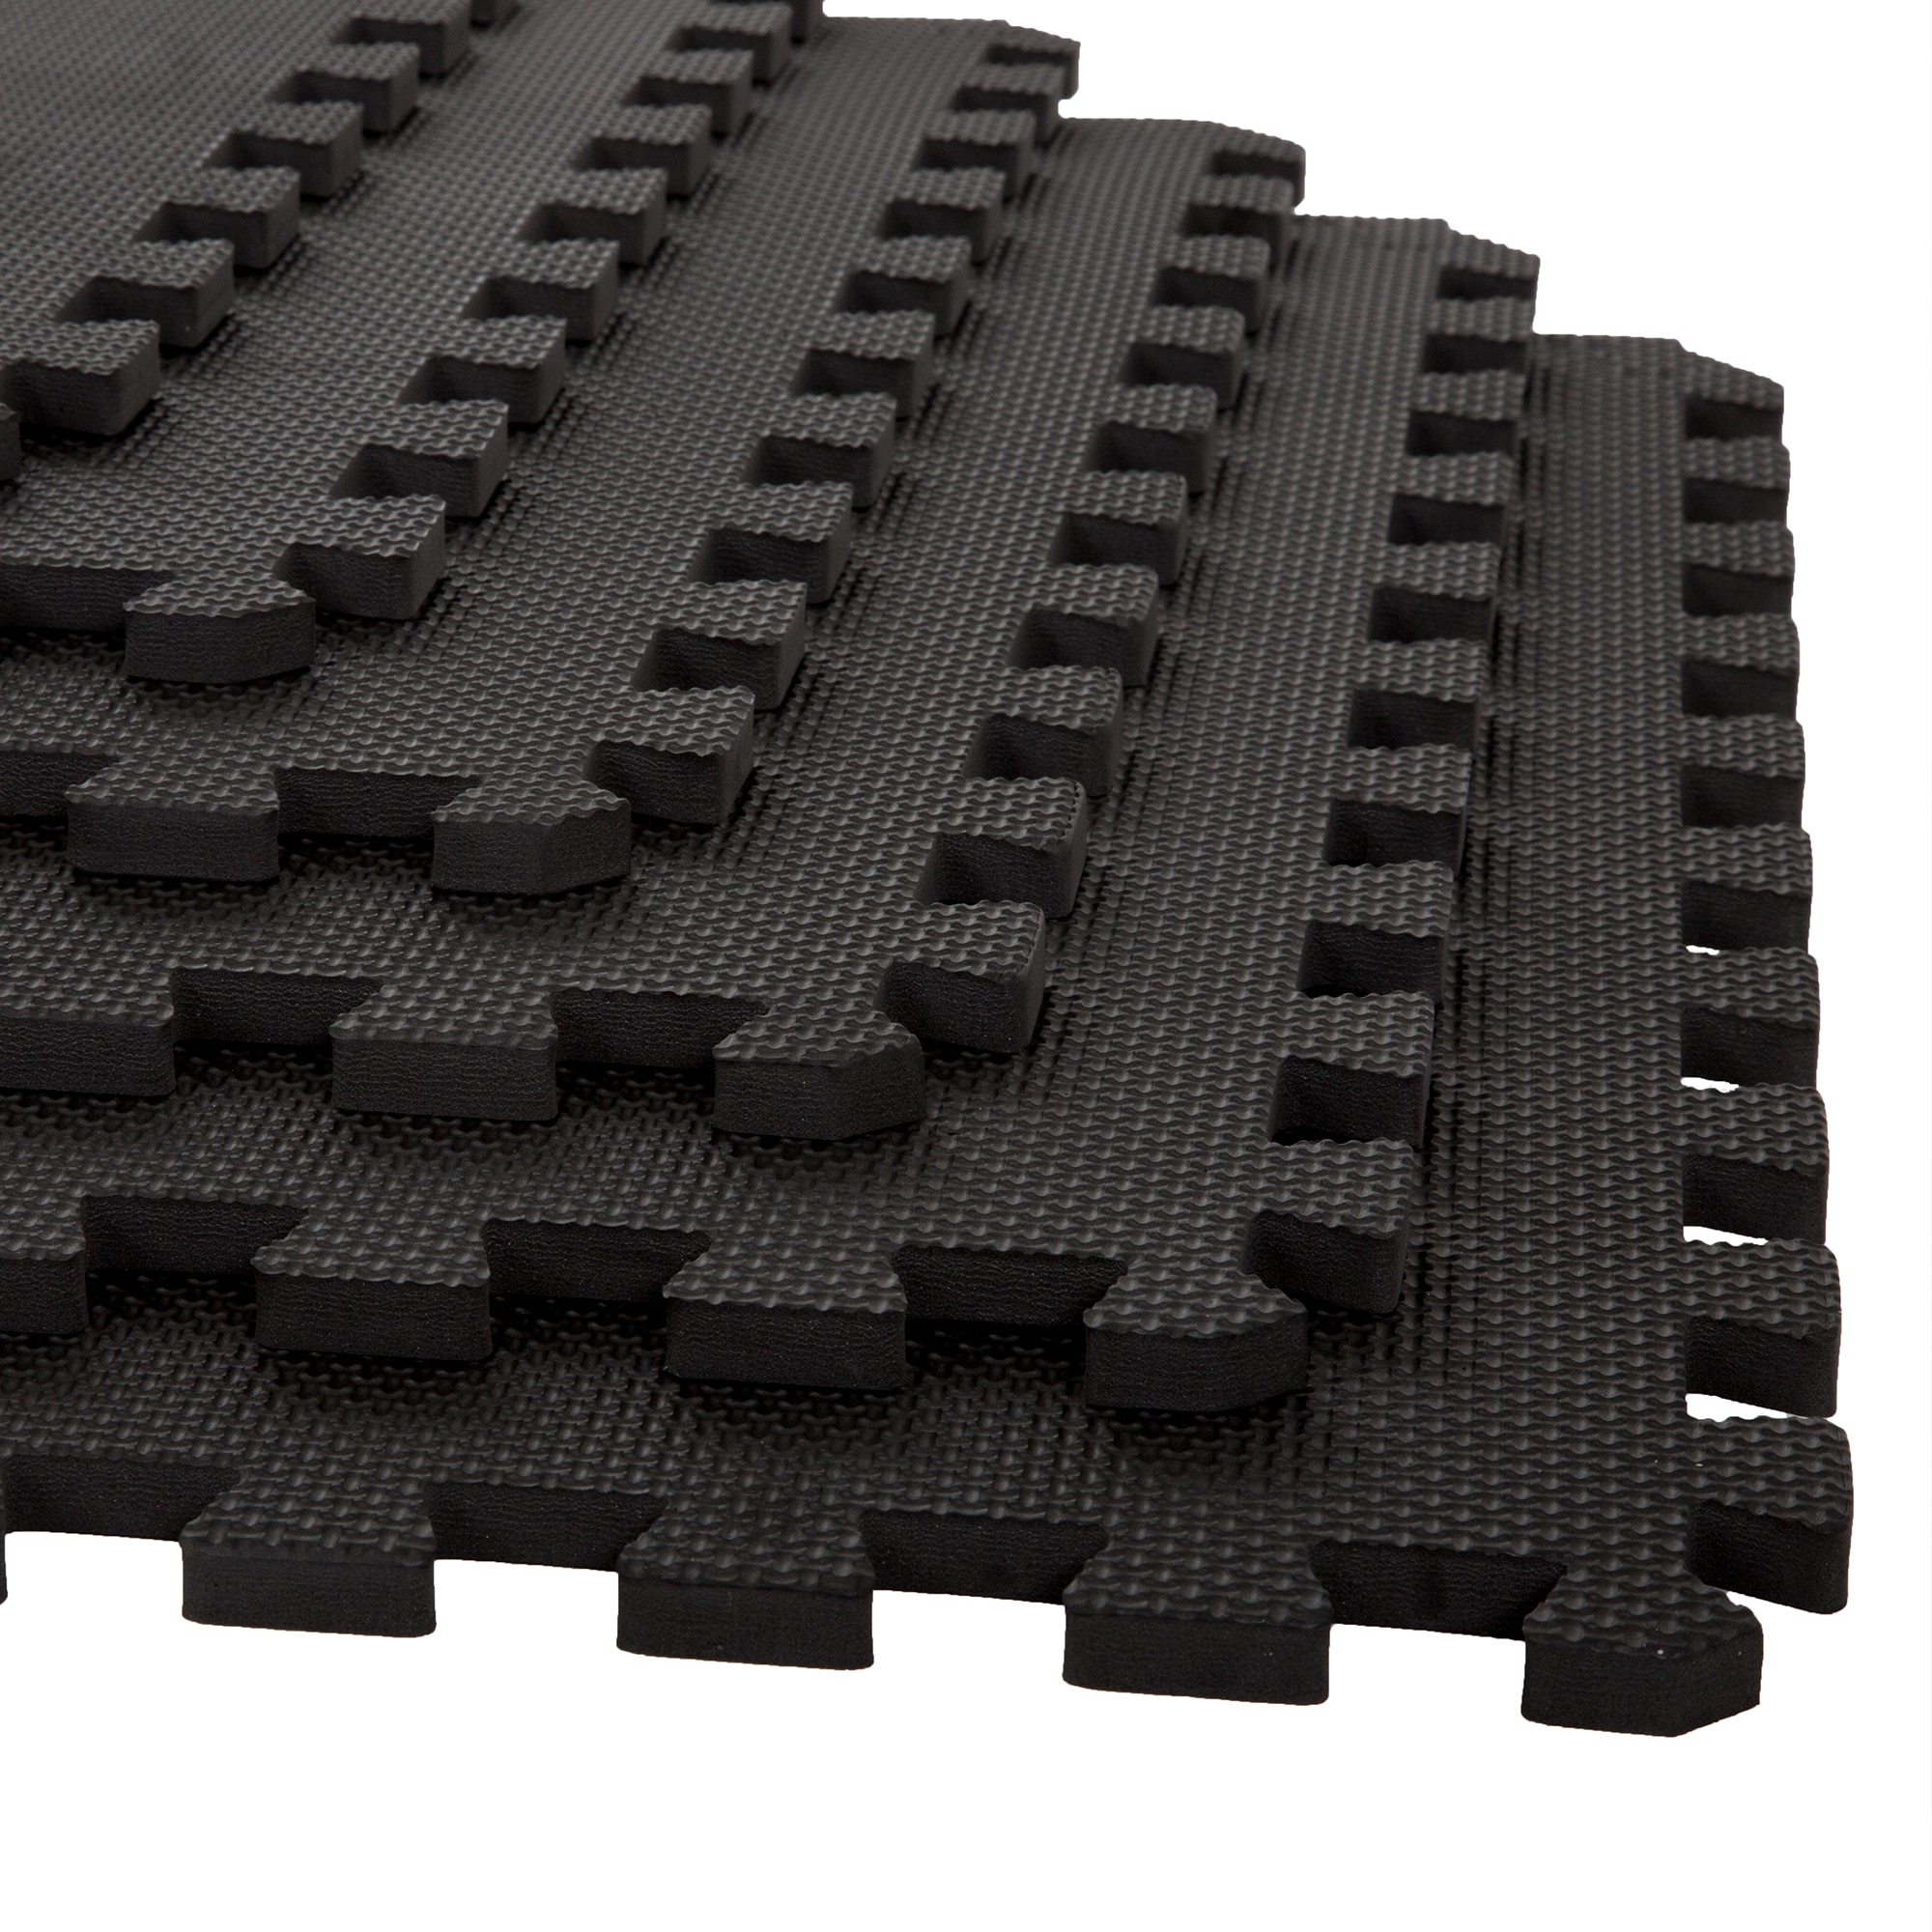  6 Piece Interlocking Square Foam Floor Mats Non-Slip